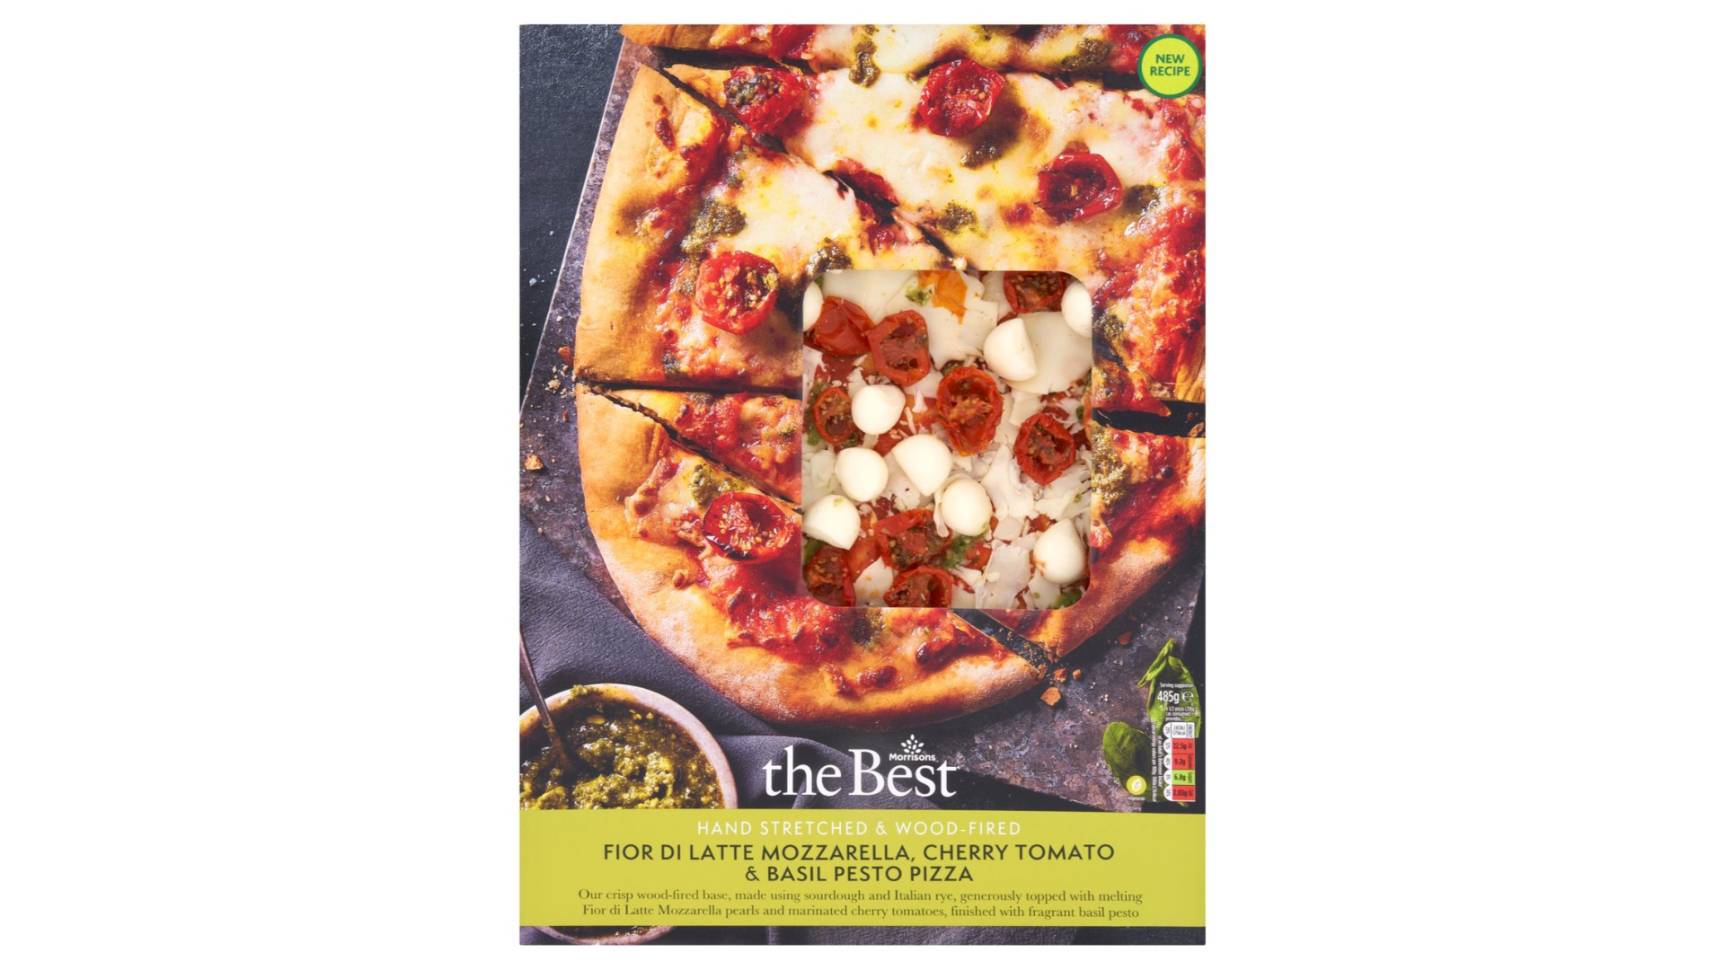 Morrisons the Best Fior Di Latte Mozzarella, Cherry Tomato & Basil Pesto Pizza